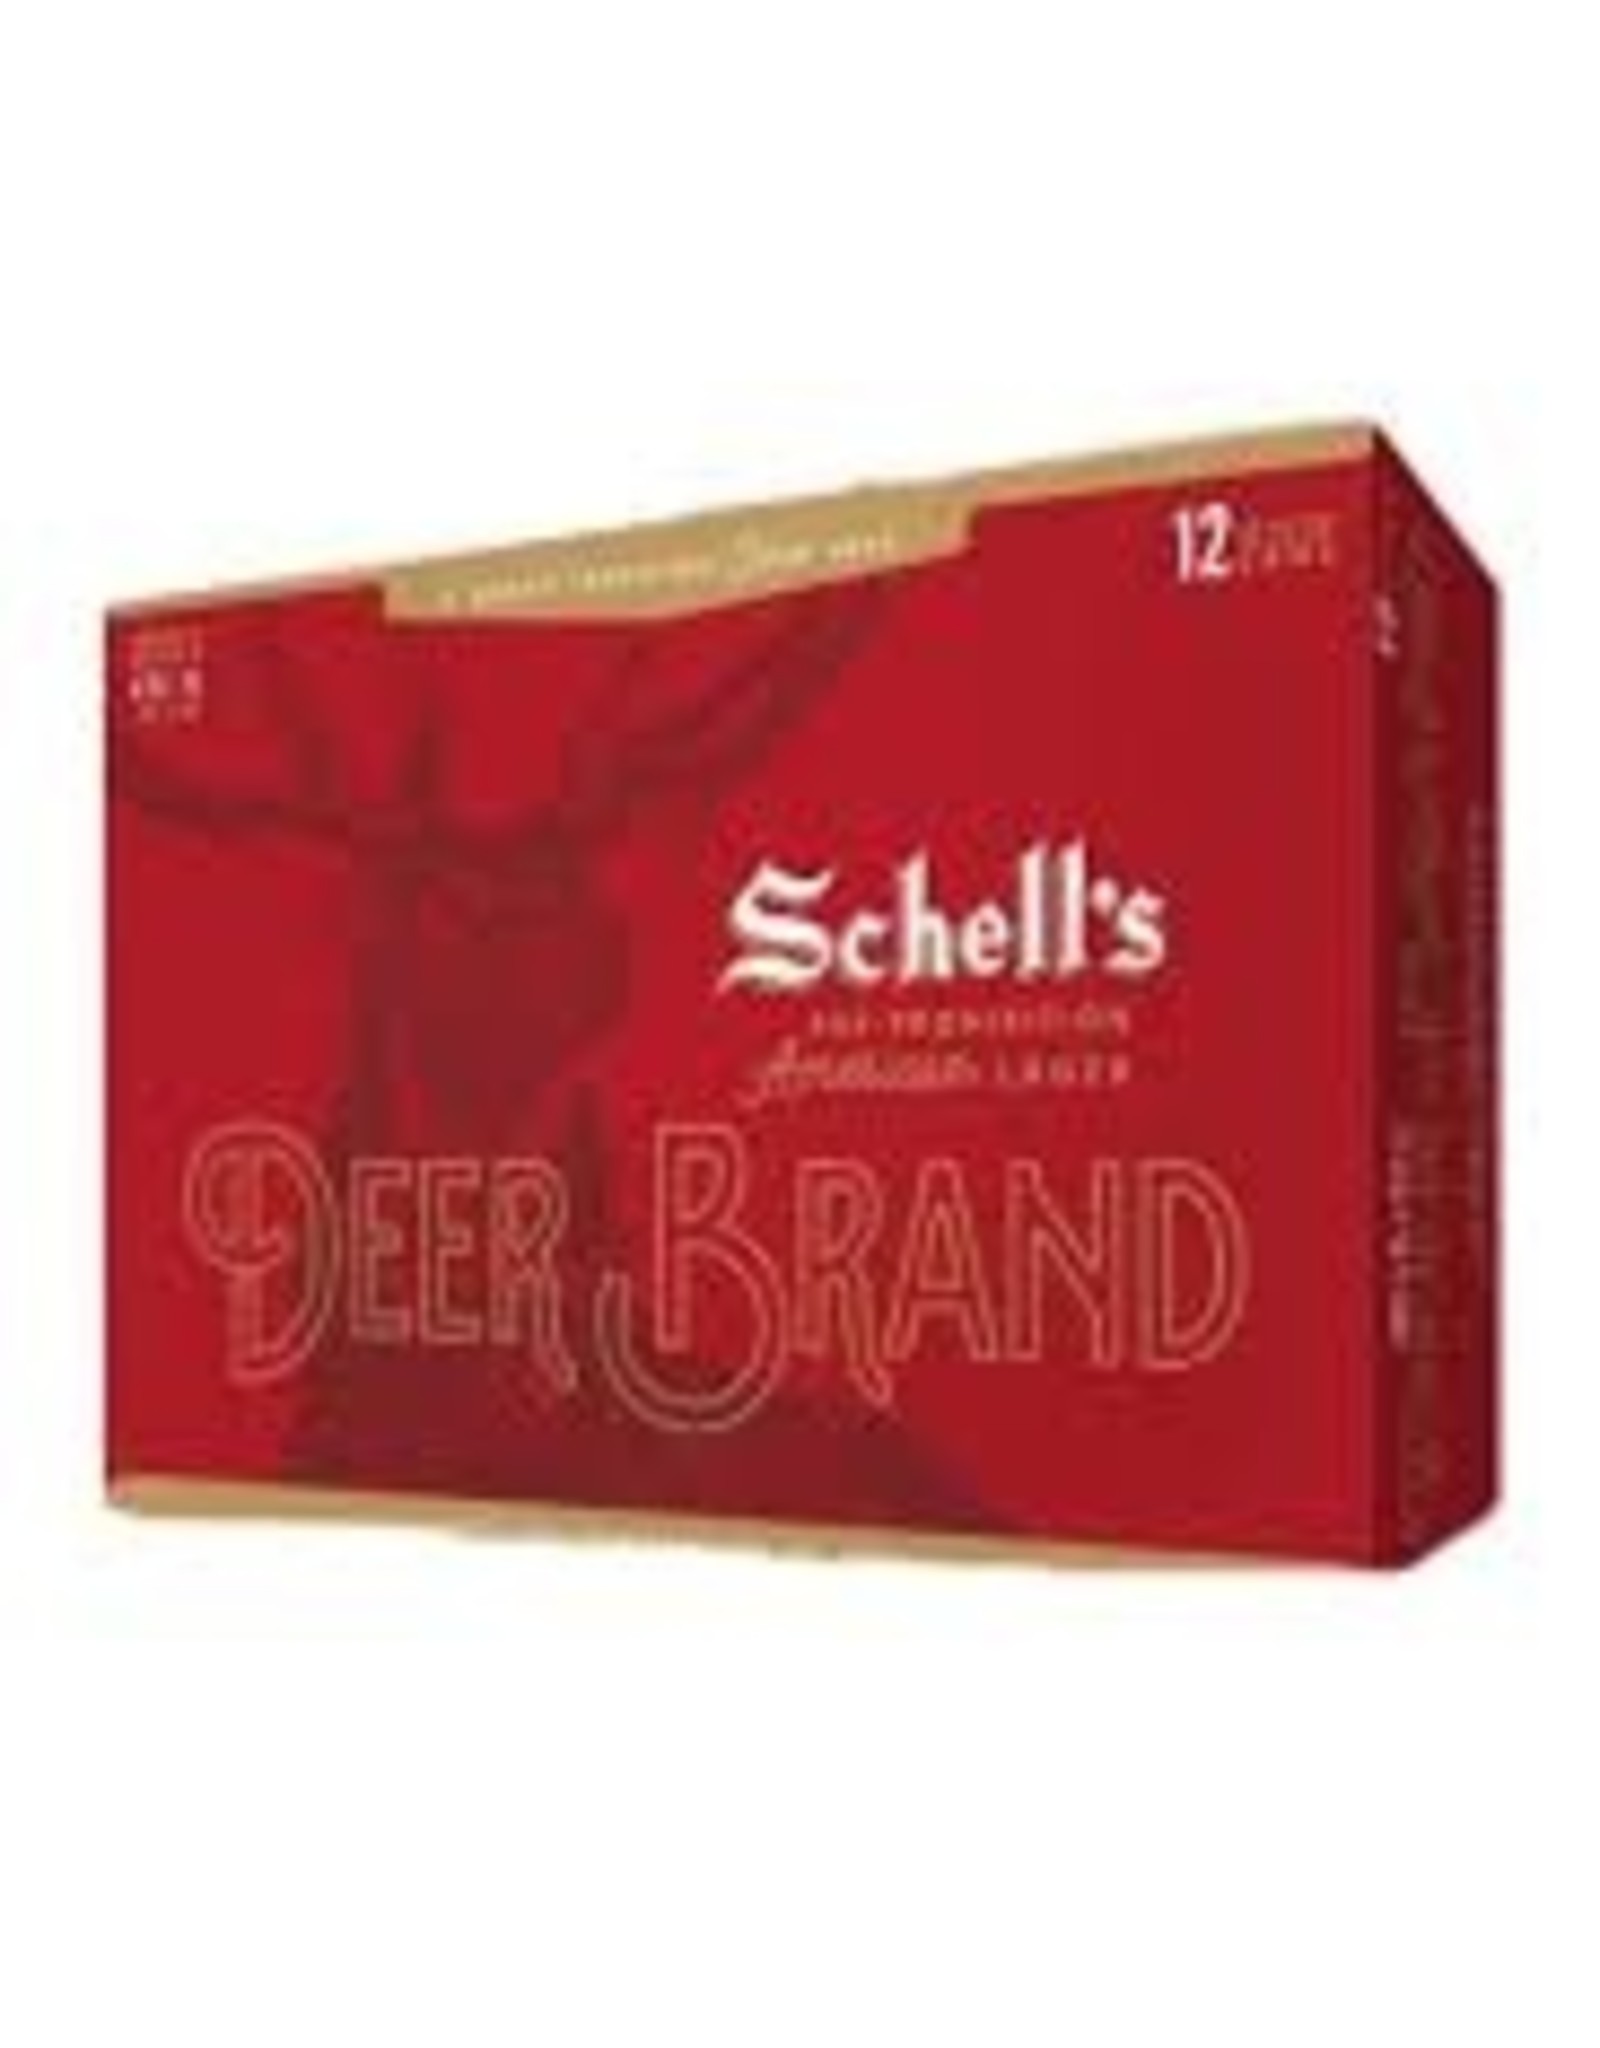 Schell's Deer Brand 12x12 oz cans